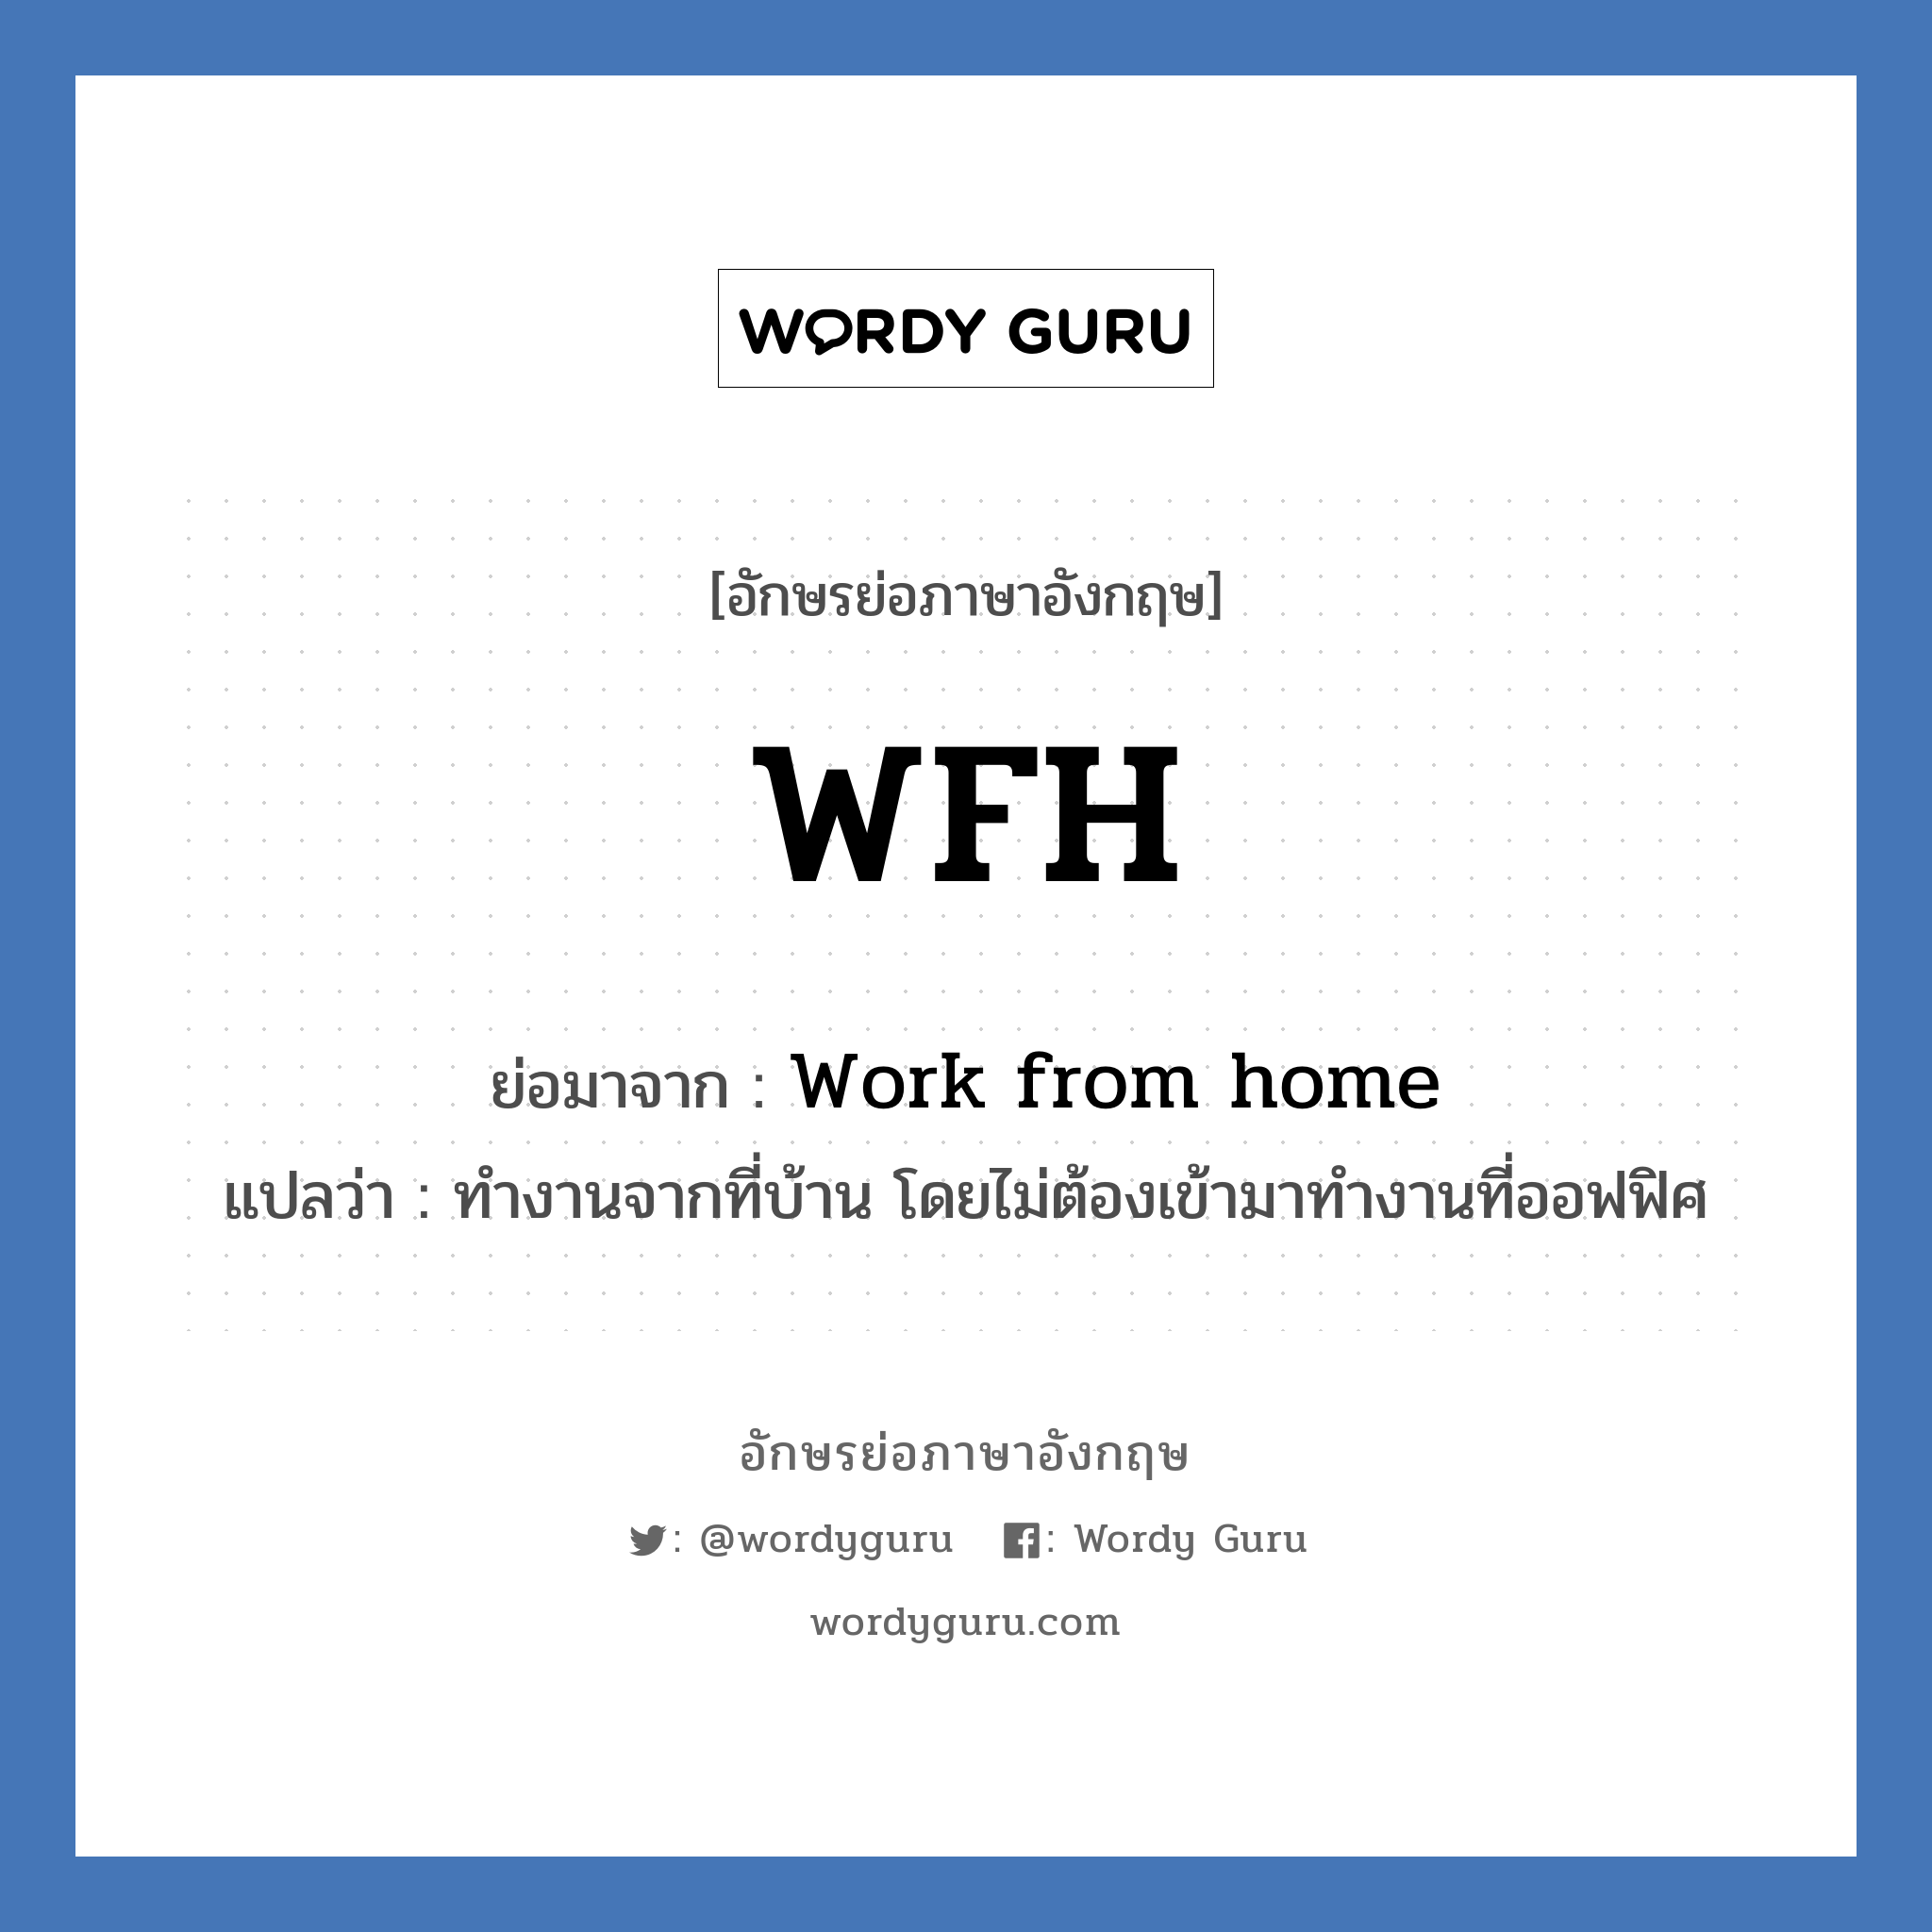 Work from home คำย่อคือ? แปลว่า?, อักษรย่อภาษาอังกฤษ Work from home ย่อมาจาก WFH แปลว่า ทำงานจากที่บ้าน โดยไม่ต้องเข้ามาทำงานที่ออฟฟิศ